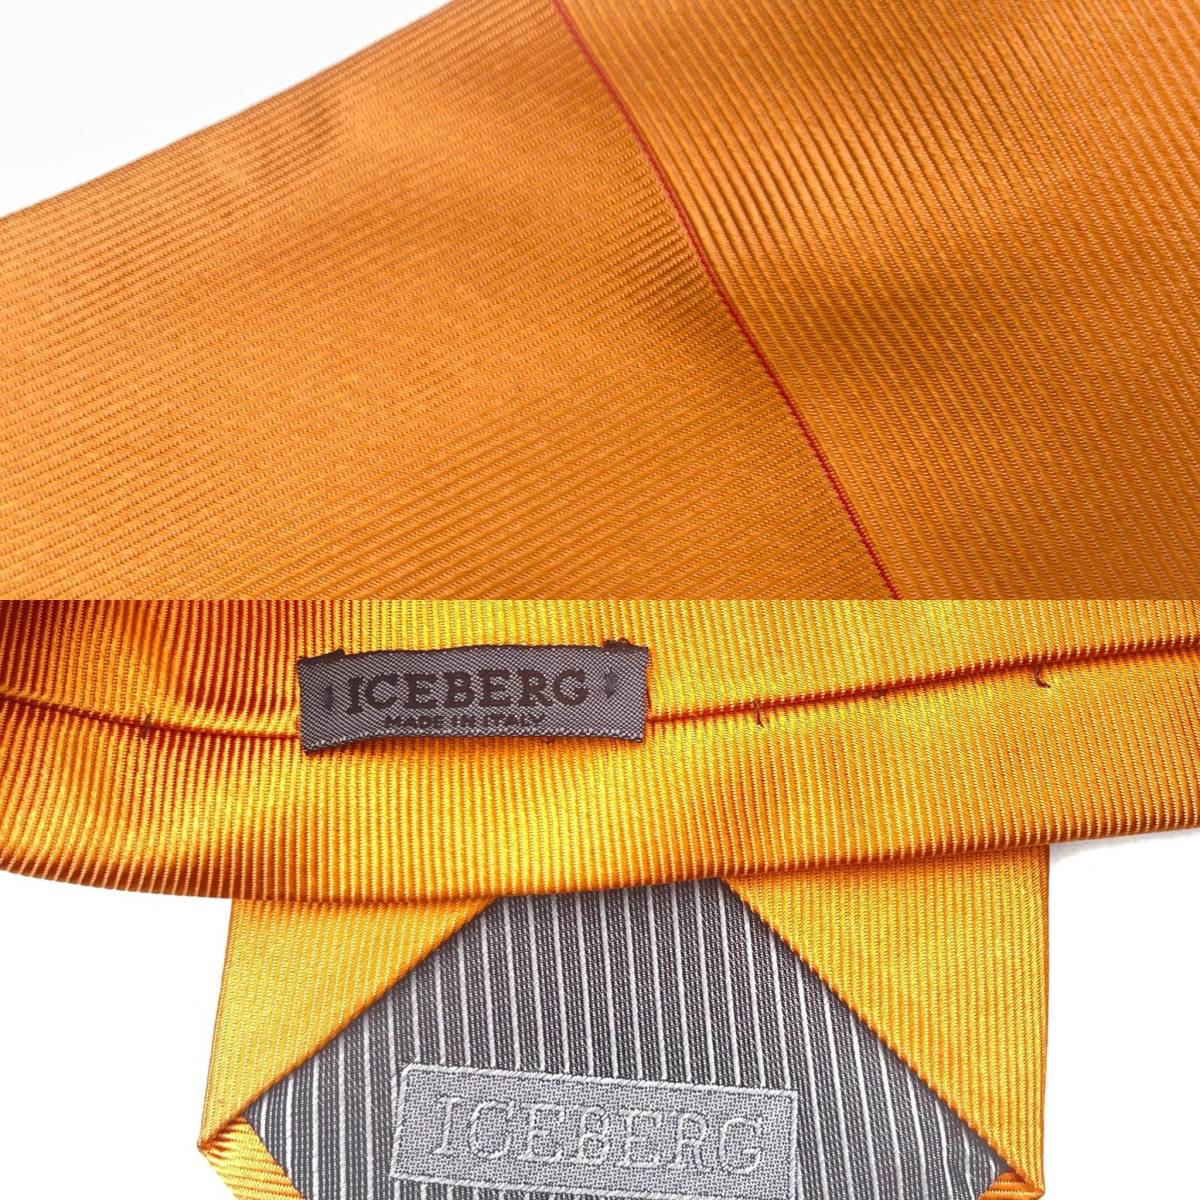 [ выгода ] Iceberg дизайн шелк галстук ICEBERG Италия производства желтый orange серия ткань ткань серия 